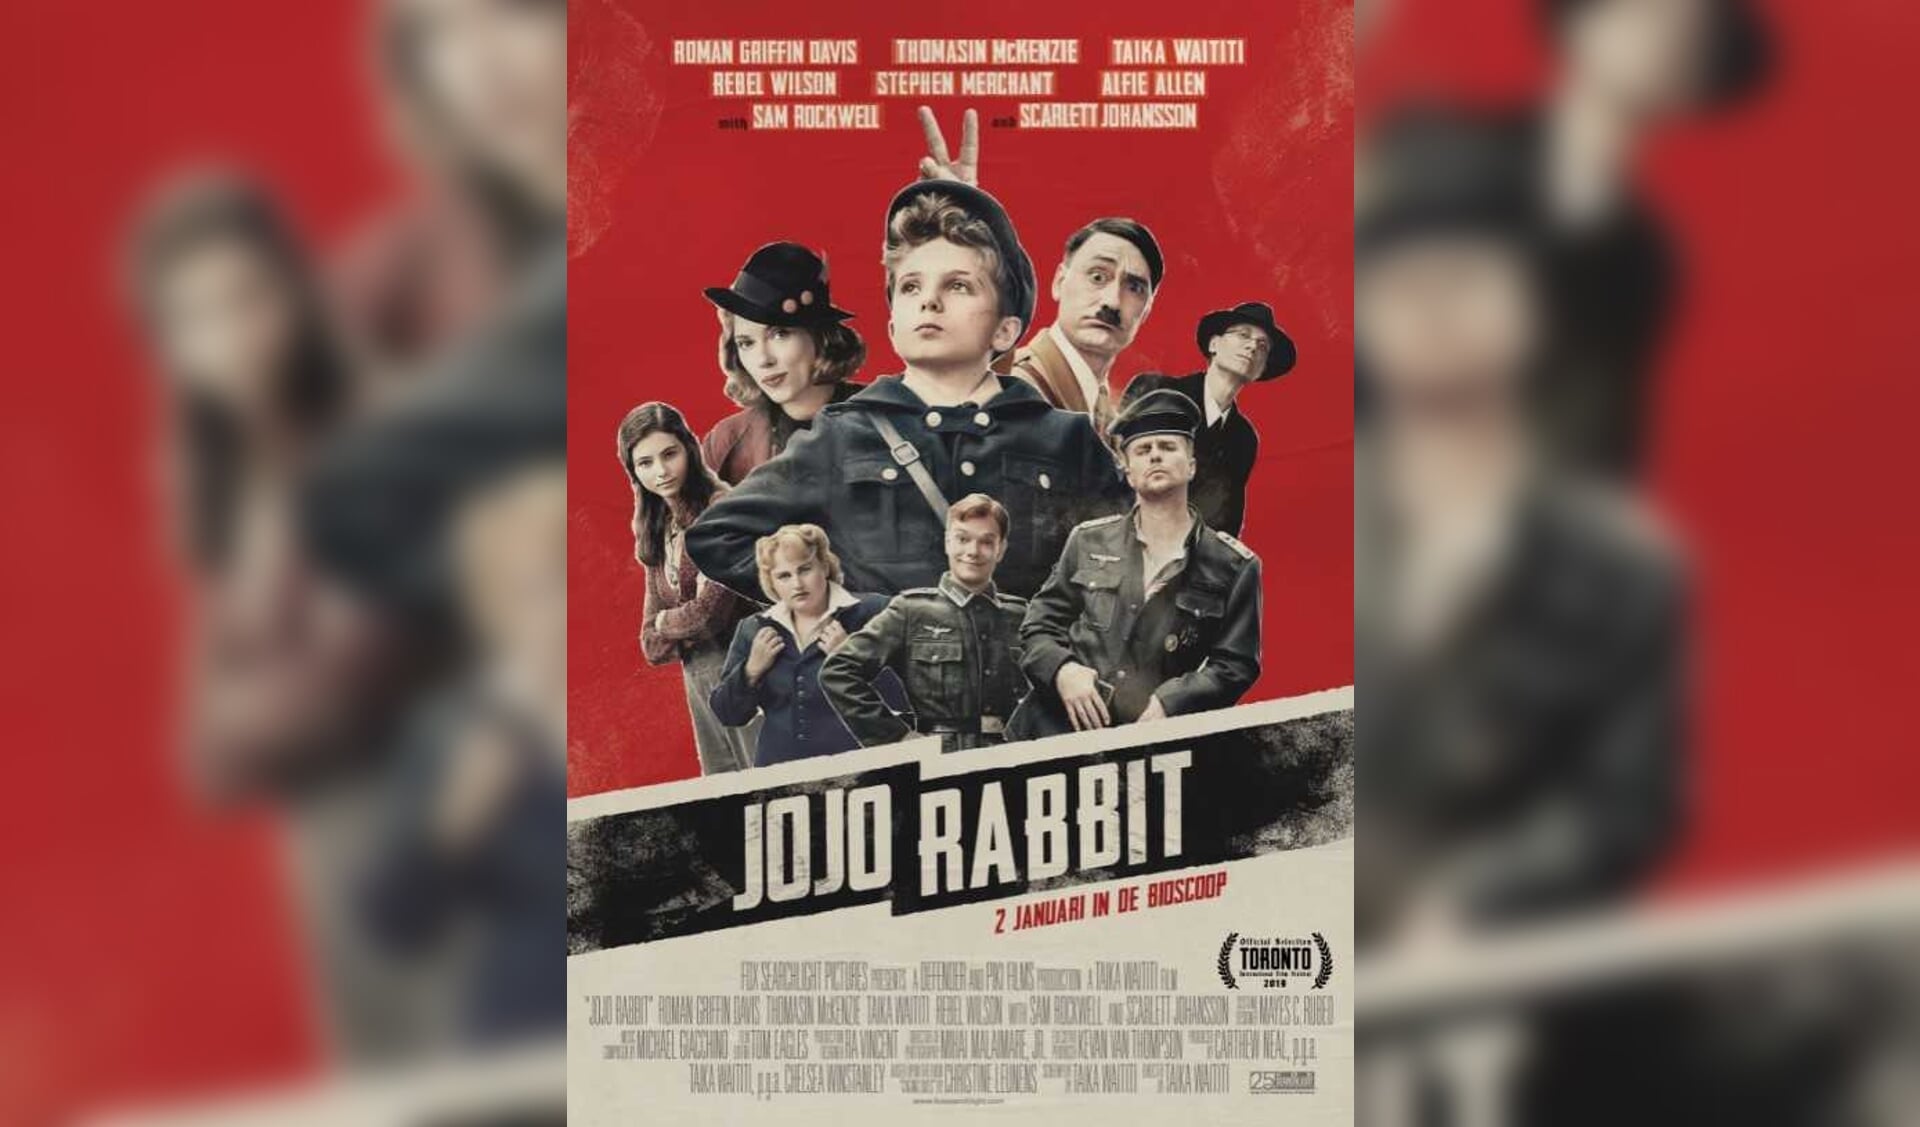 Op 23 november vertoont Filmhuis Steenwijk Jojo Rabbit